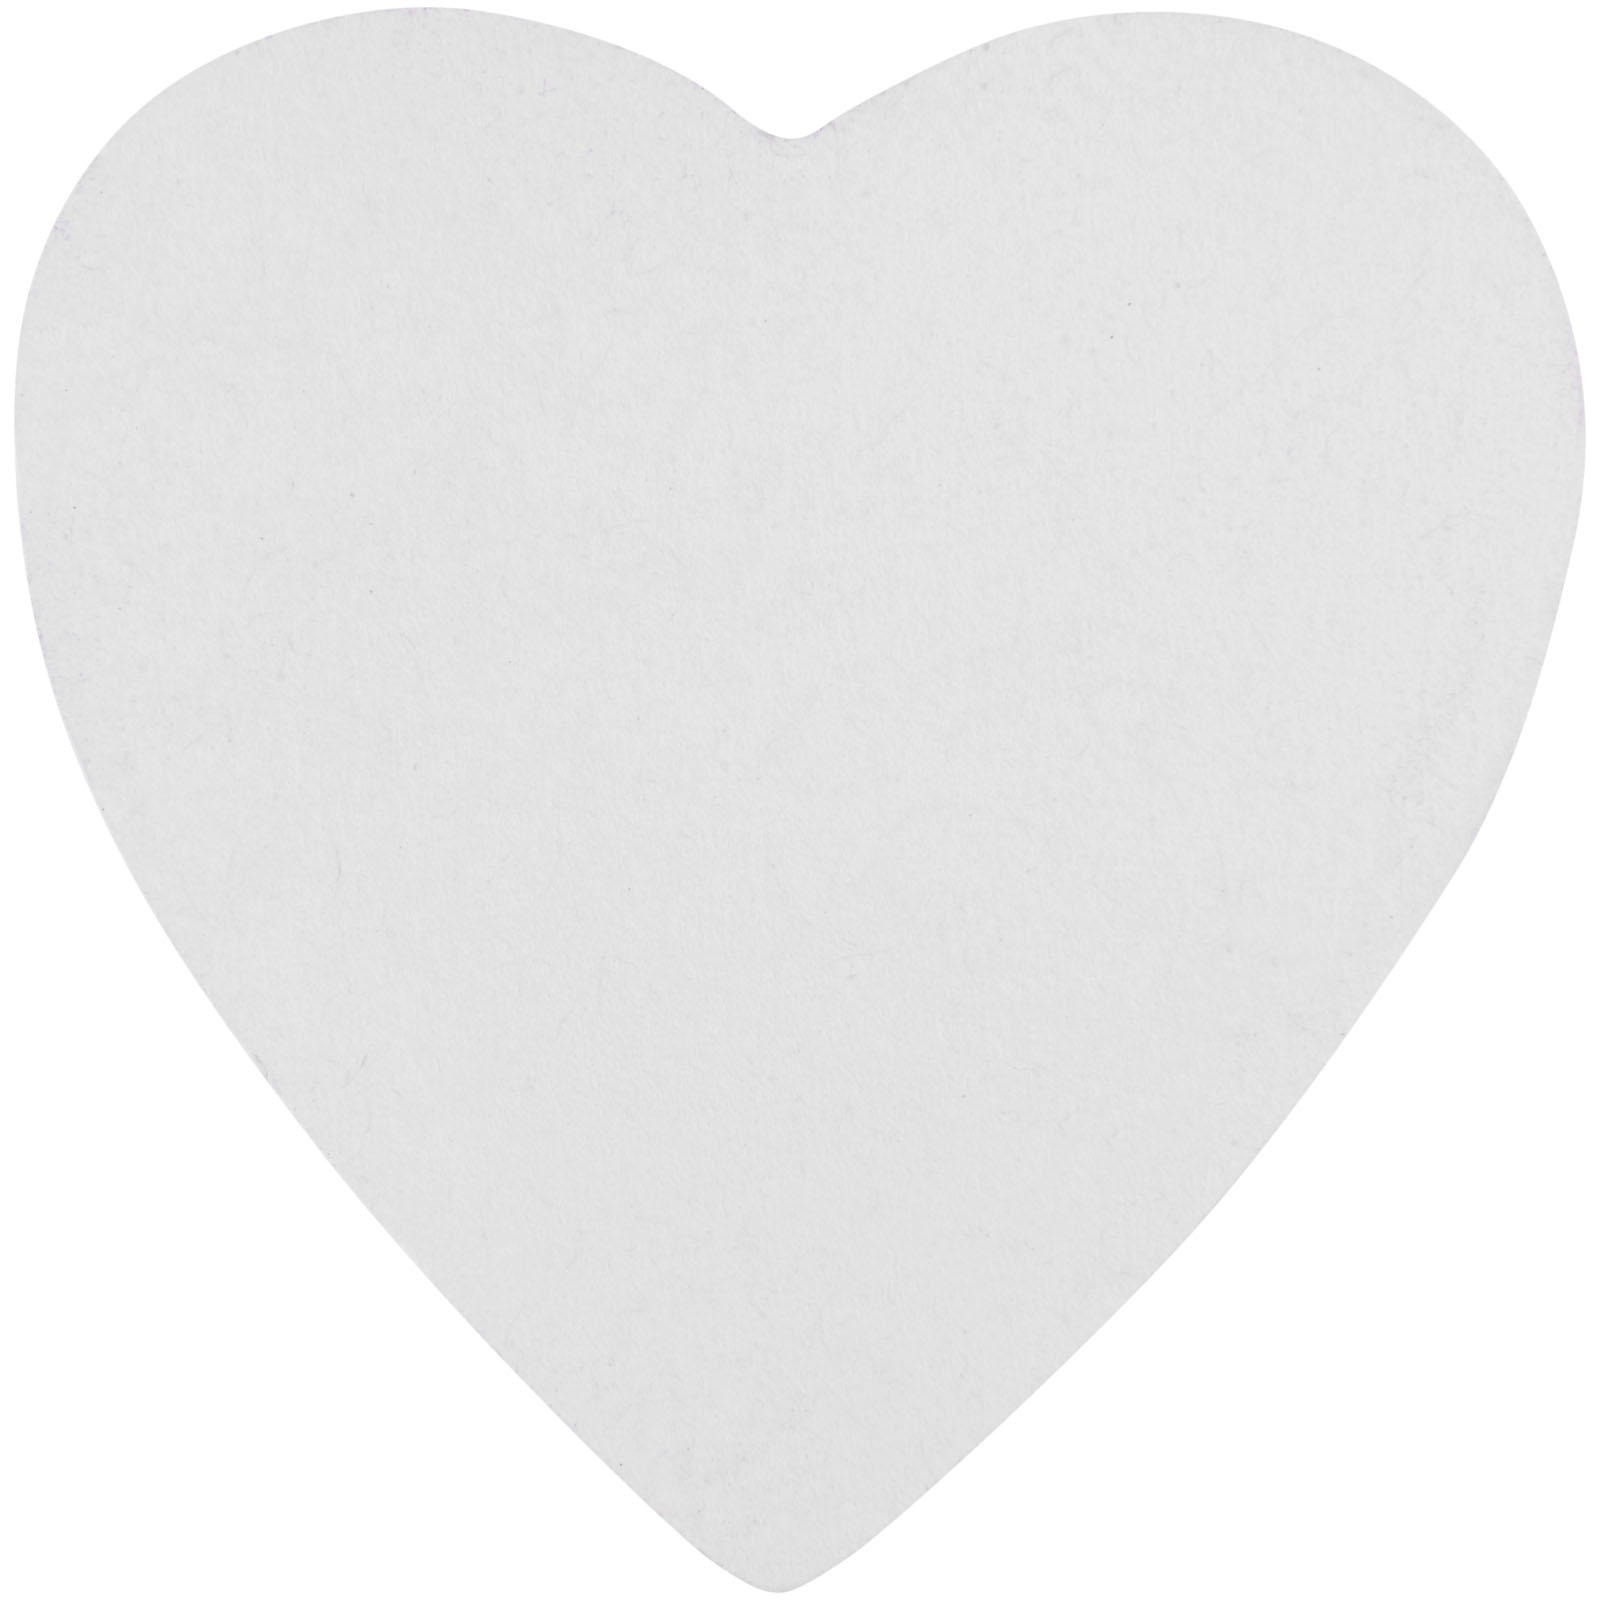 Advertising Sticky Notes - Sticky-Mate® heart-shaped recycled sticky notes - 1